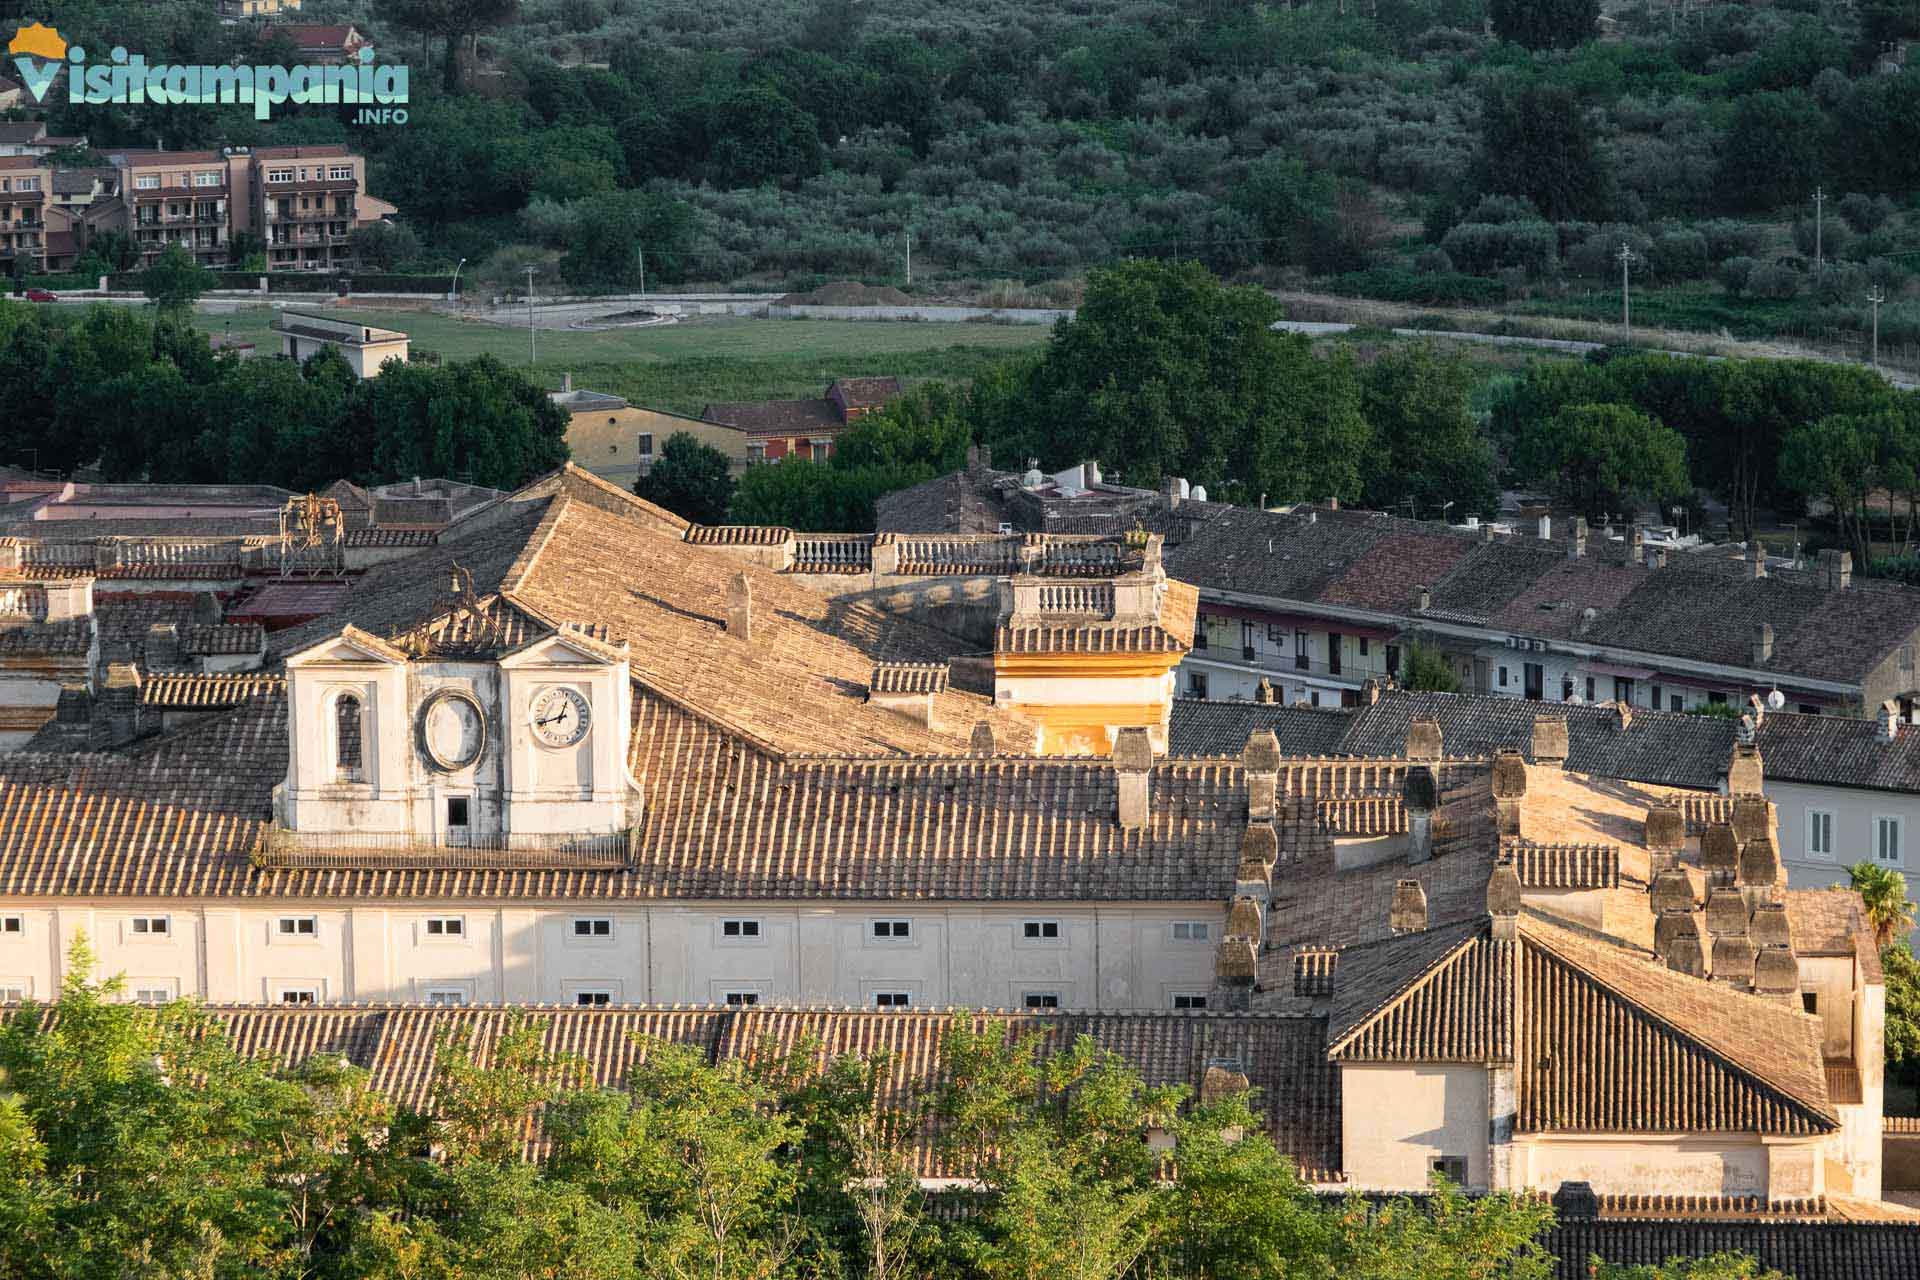 San Leucio et Vaccheria, vue sur le village de San Leucio depuis le chemin de terre